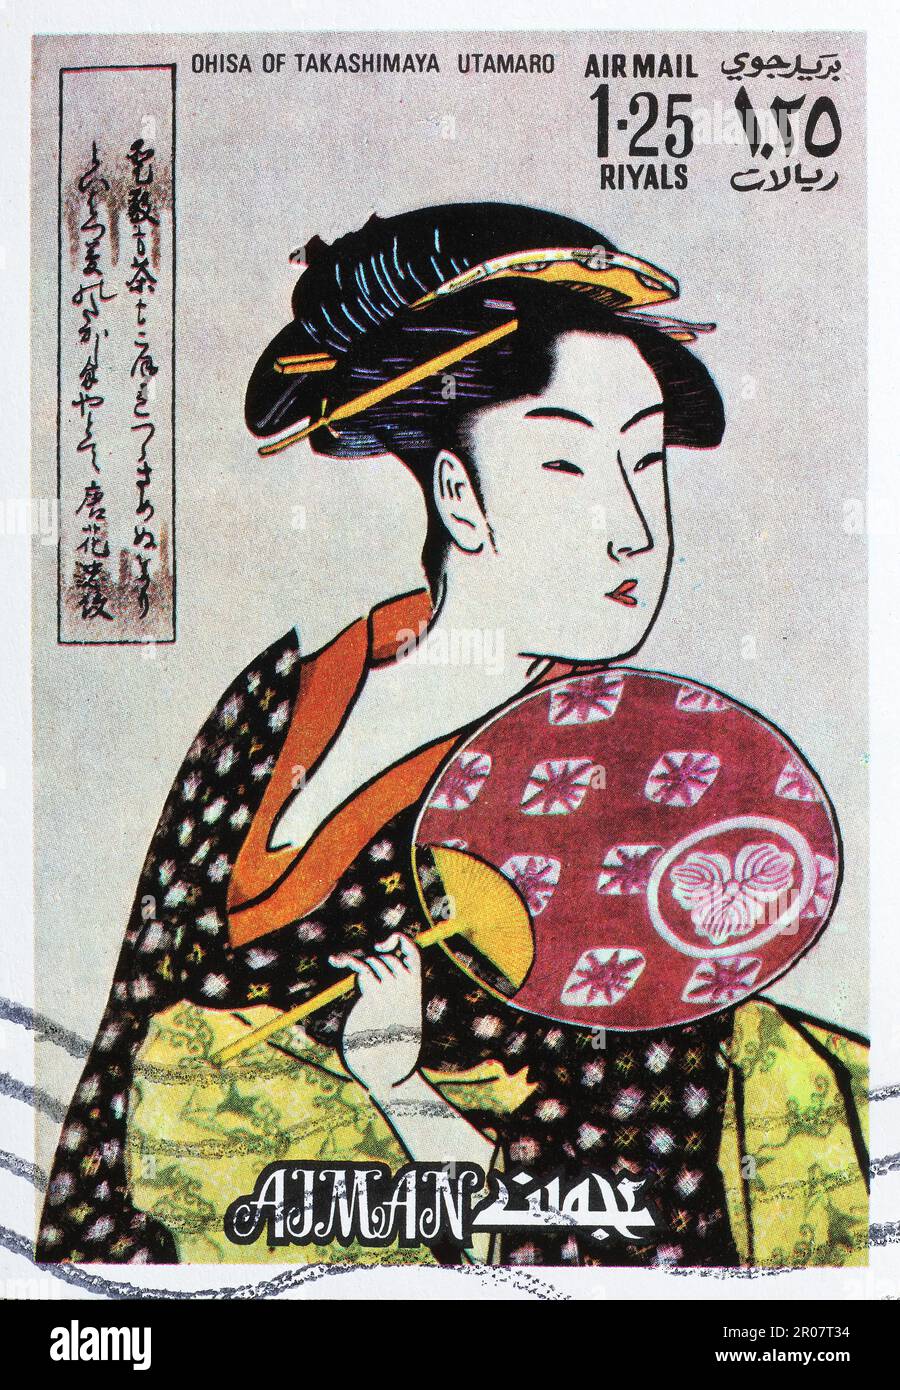 Femme japonaise peignant ses cheveux - Affiche art déco vintage